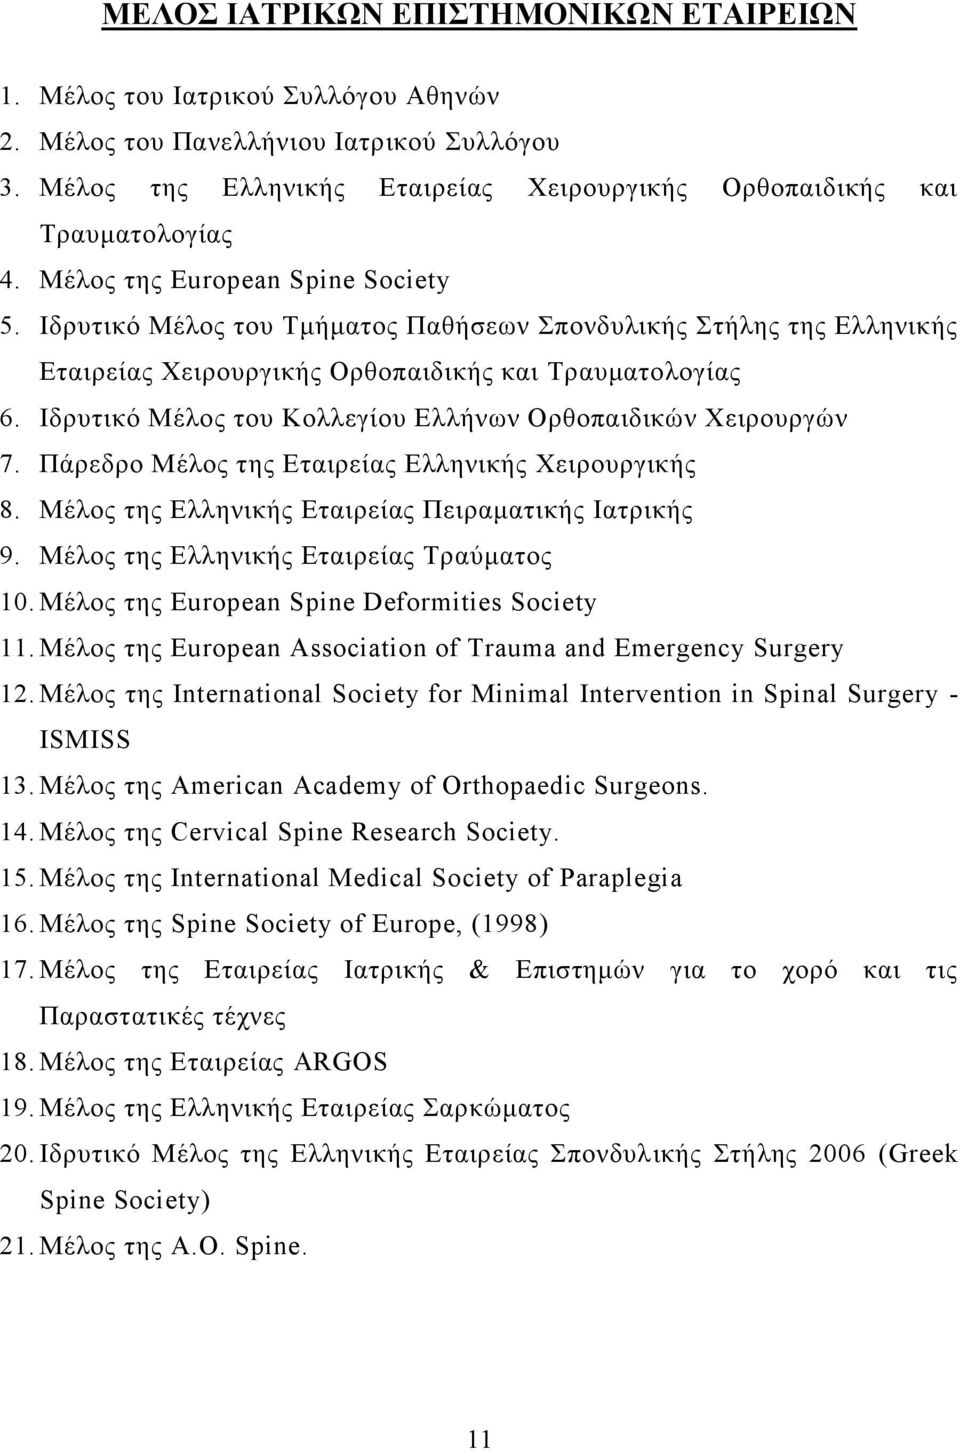 Ιδρυτικό Μέλος του Κολλεγίου Ελλήνων Ορθοπαιδικών Χειρουργών 7. Πάρεδρο Μέλος της Εταιρείας Ελληνικής Χειρουργικής 8. Μέλος της Ελληνικής Εταιρείας Πειραματικής Ιατρικής 9.